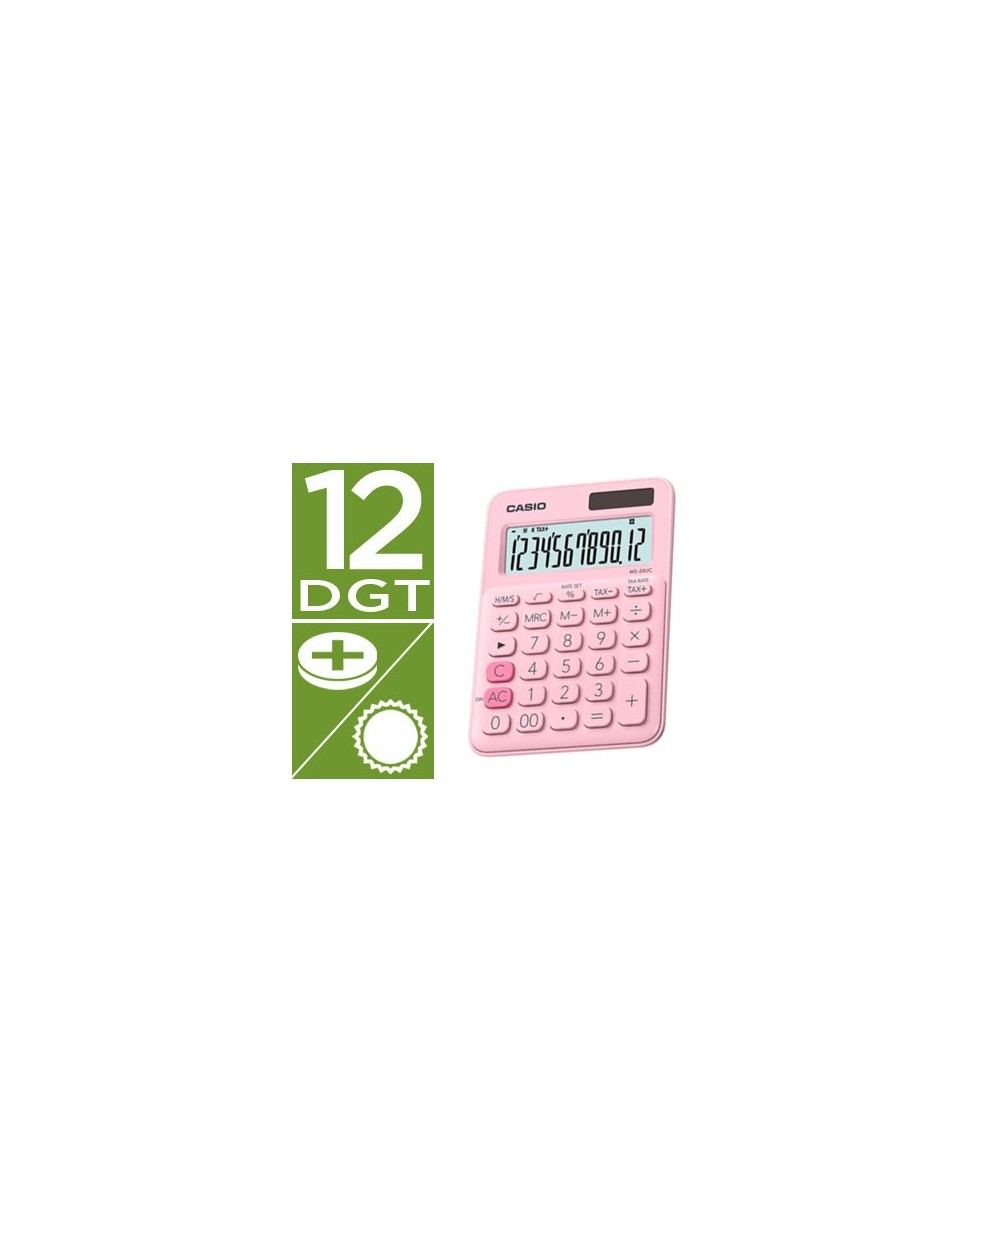 Calculadora casio ms 20uc pk sobremesa 12 digitos tax color rosa